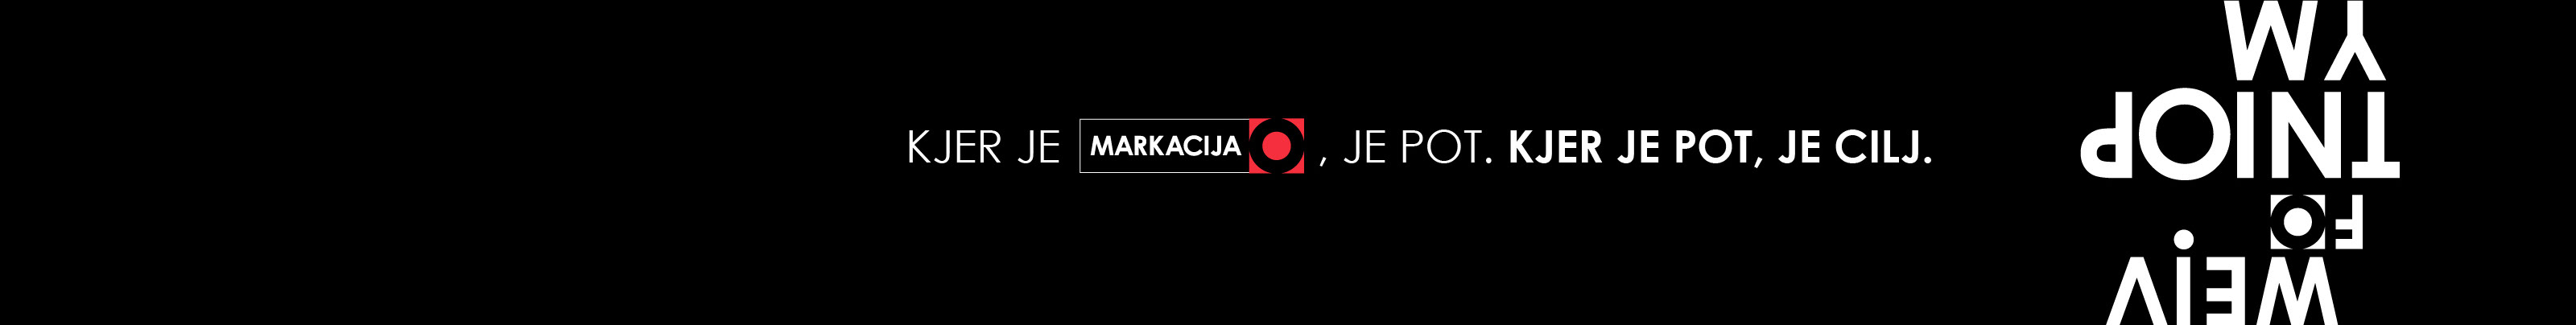 MARKACIJA Marketing in komunikacija's profile banner